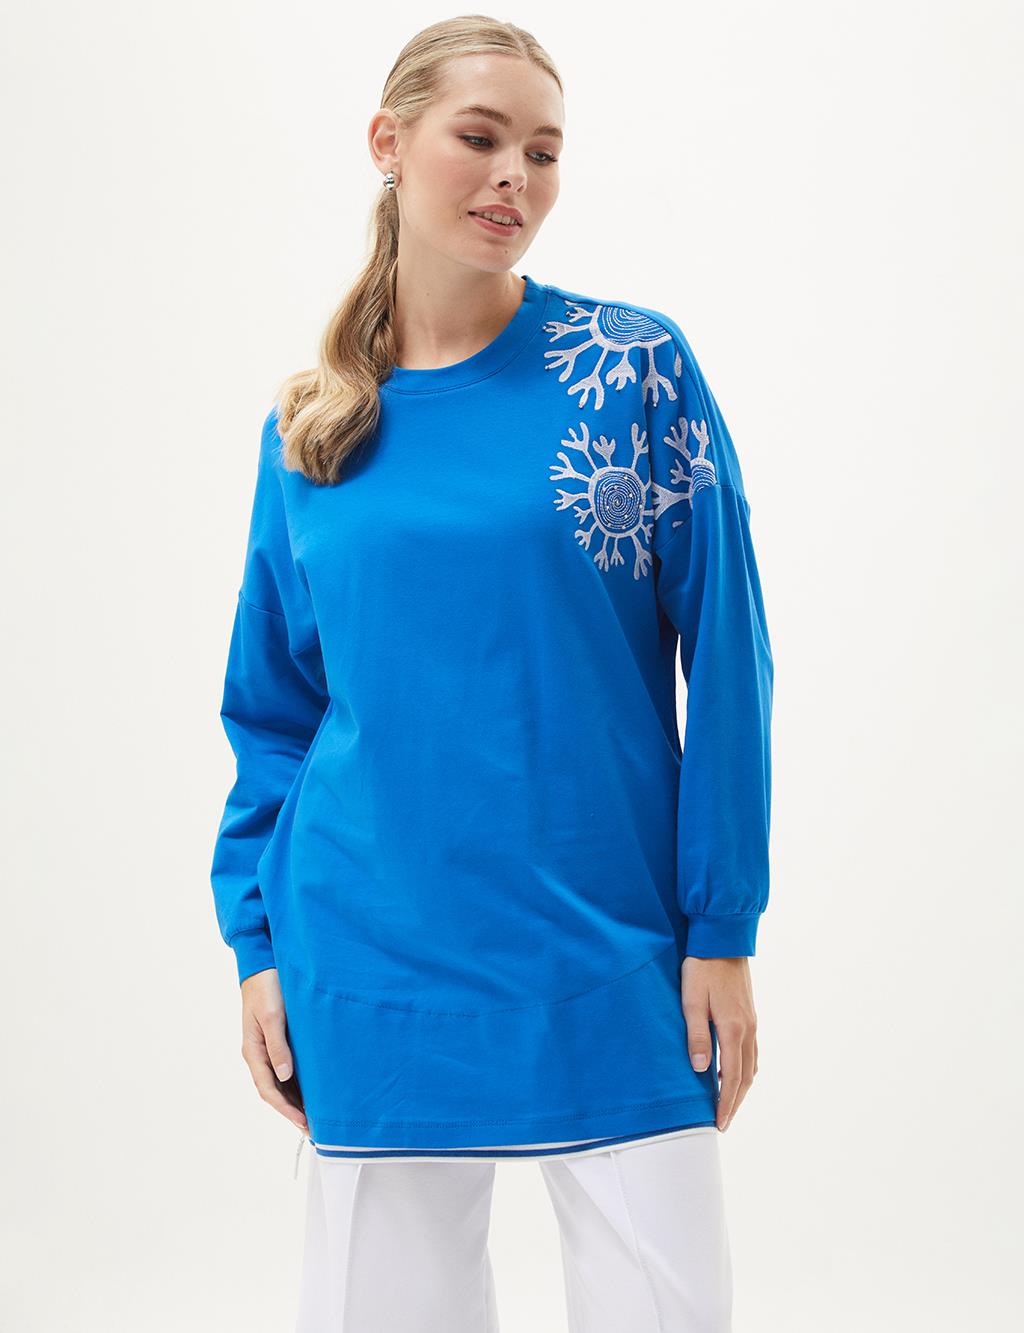 Ribanalı Yarım Fermuar Kapamalı Sweatshirt Kobalt Mavi